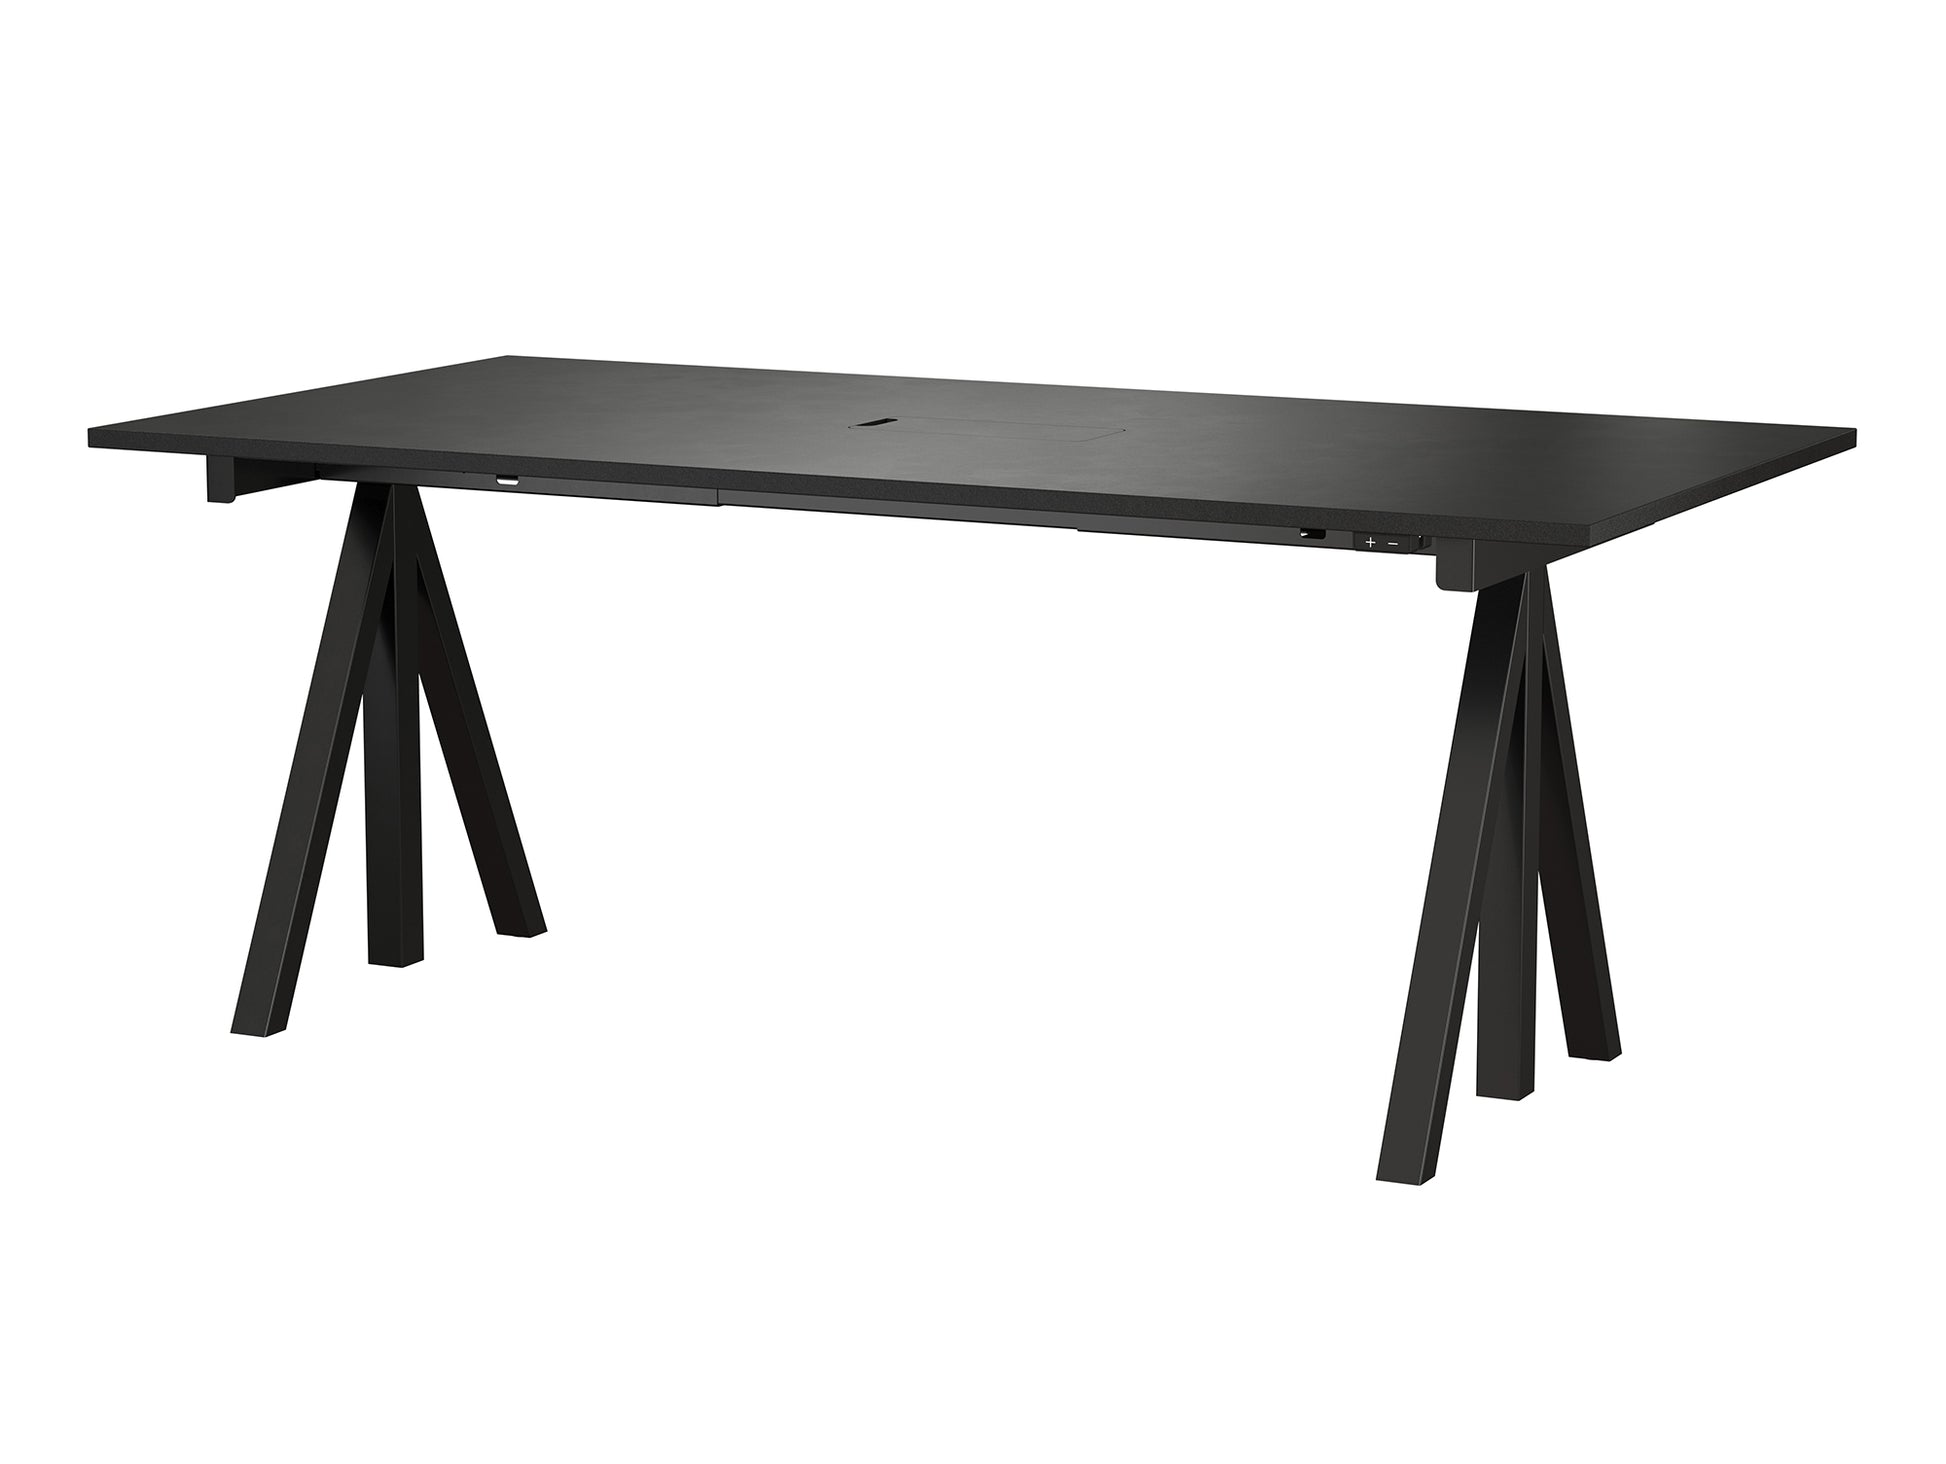 Height Adjustable Work Desk by String - 180 x 90 cm / Black Steel Base / Black Lacquered MDF Desktop